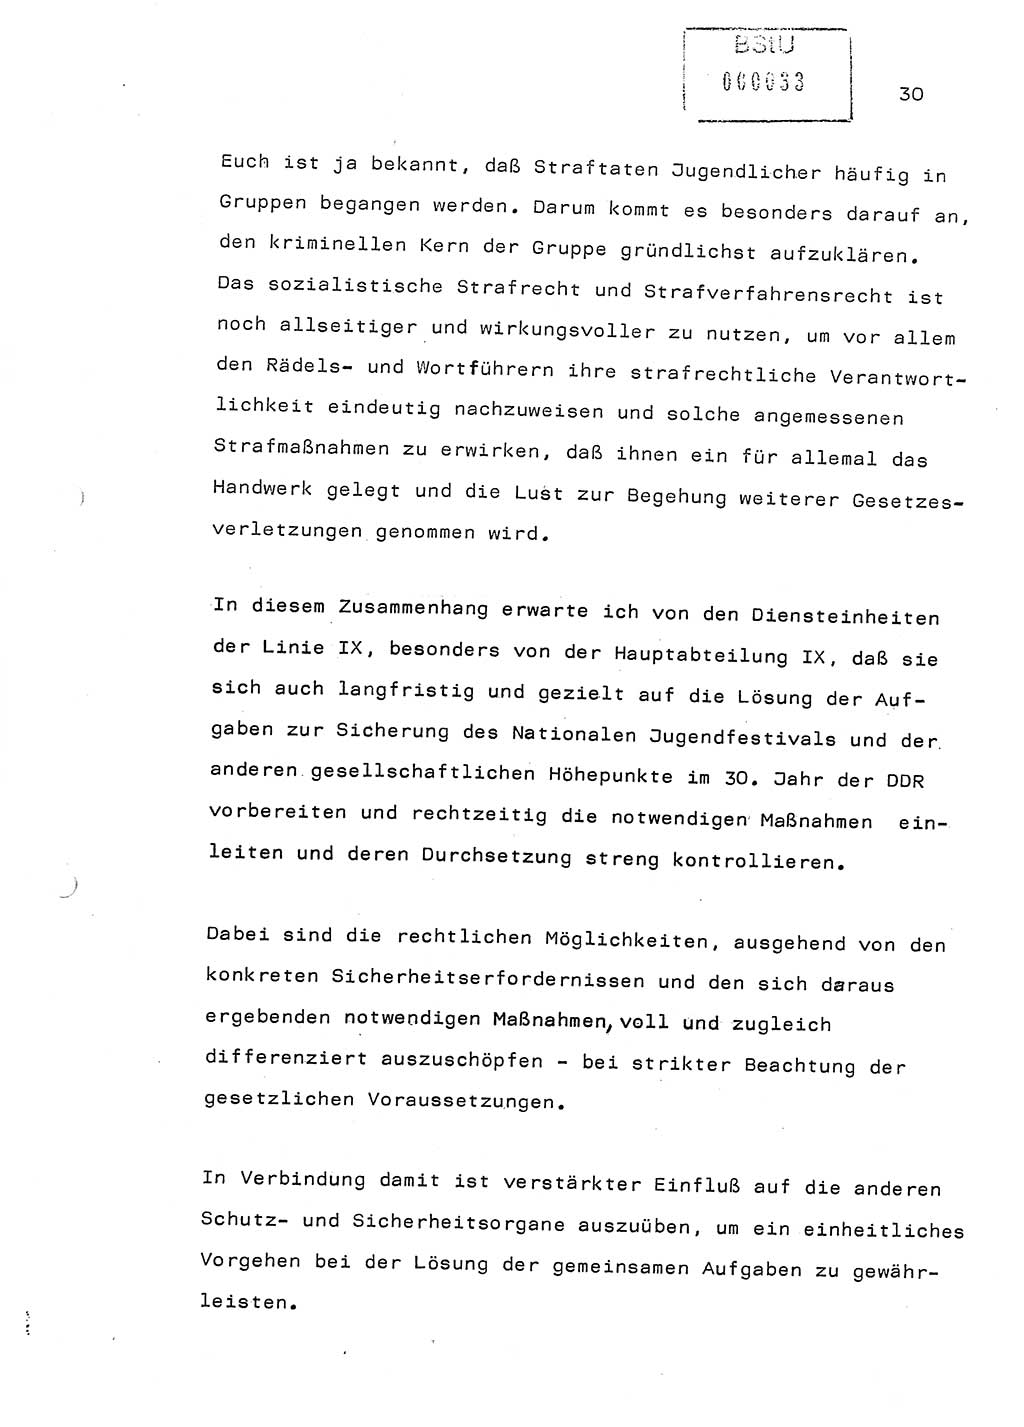 Referat (Generaloberst Erich Mielke) auf der Zentralen Dienstkonferenz am 24.5.1979 [Ministerium für Staatssicherheit (MfS), Deutsche Demokratische Republik (DDR), Der Minister], Berlin 1979, Seite 30 (Ref. DK DDR MfS Min. /79 1979, S. 30)